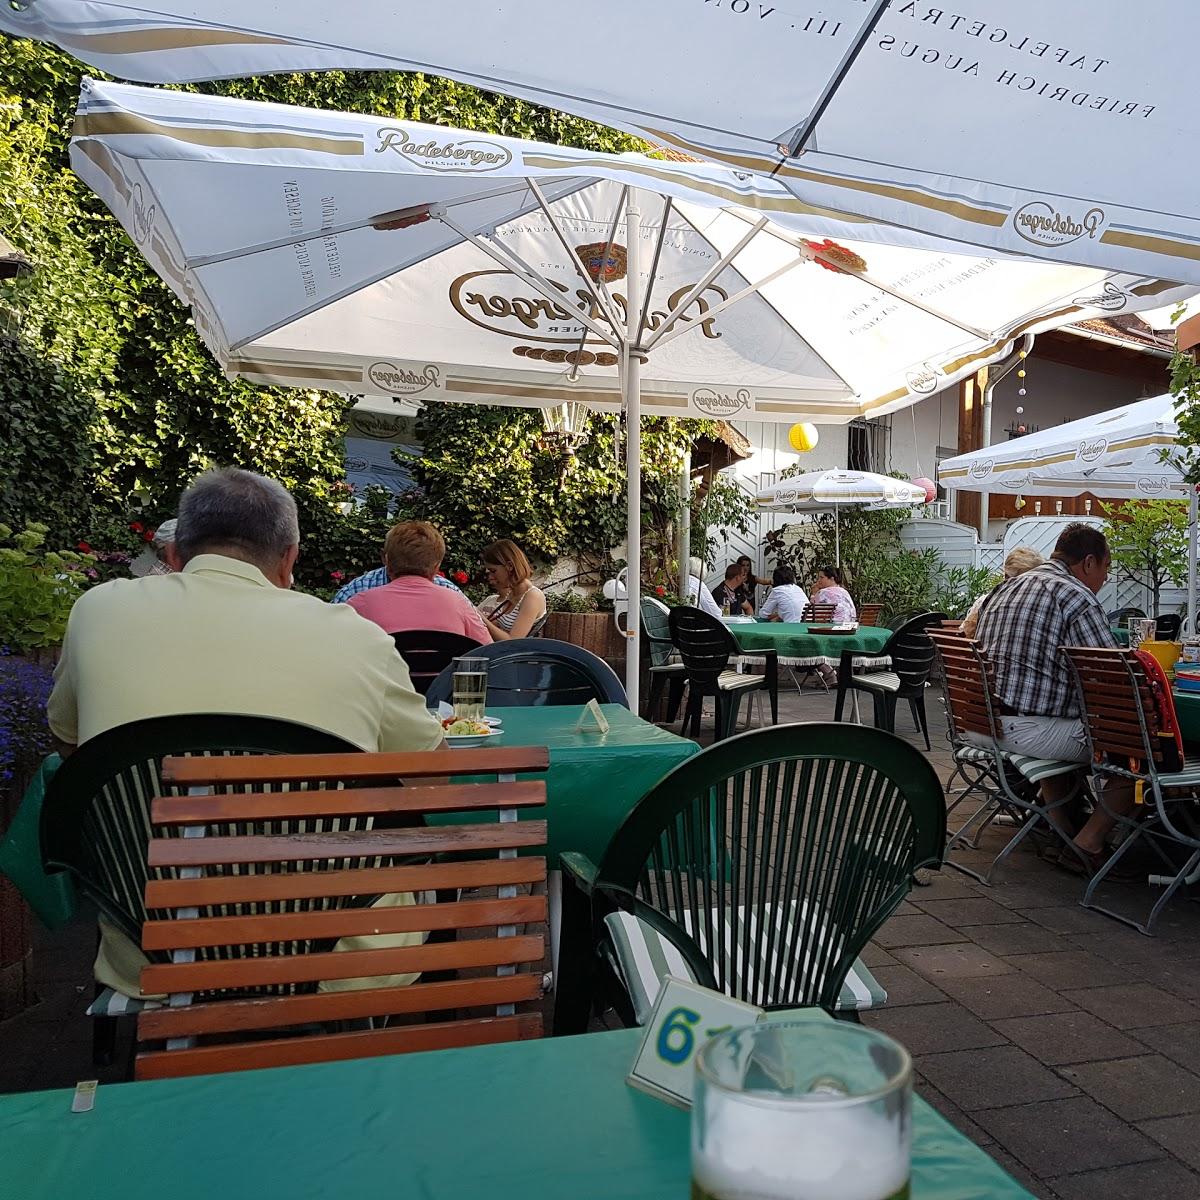 Restaurant "Winzerhalle" in Ockenheim